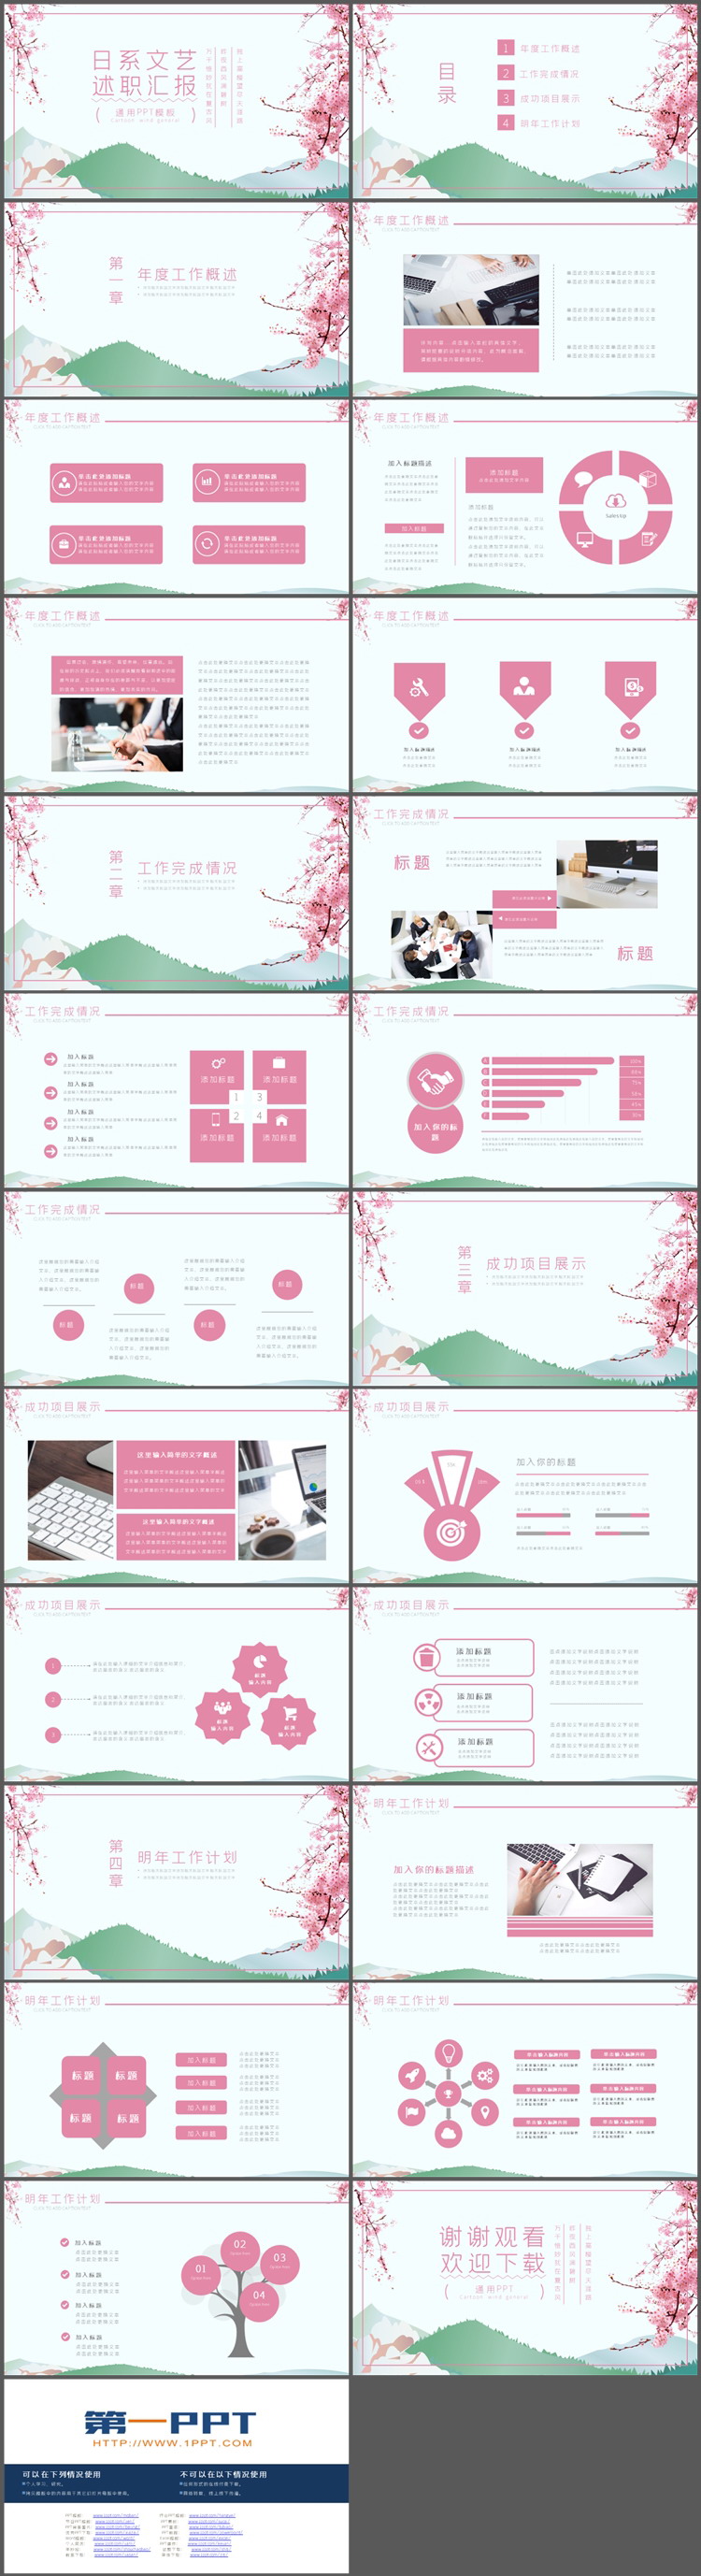 粉色樱花背景的日系文艺风述职报告PPT模板下载